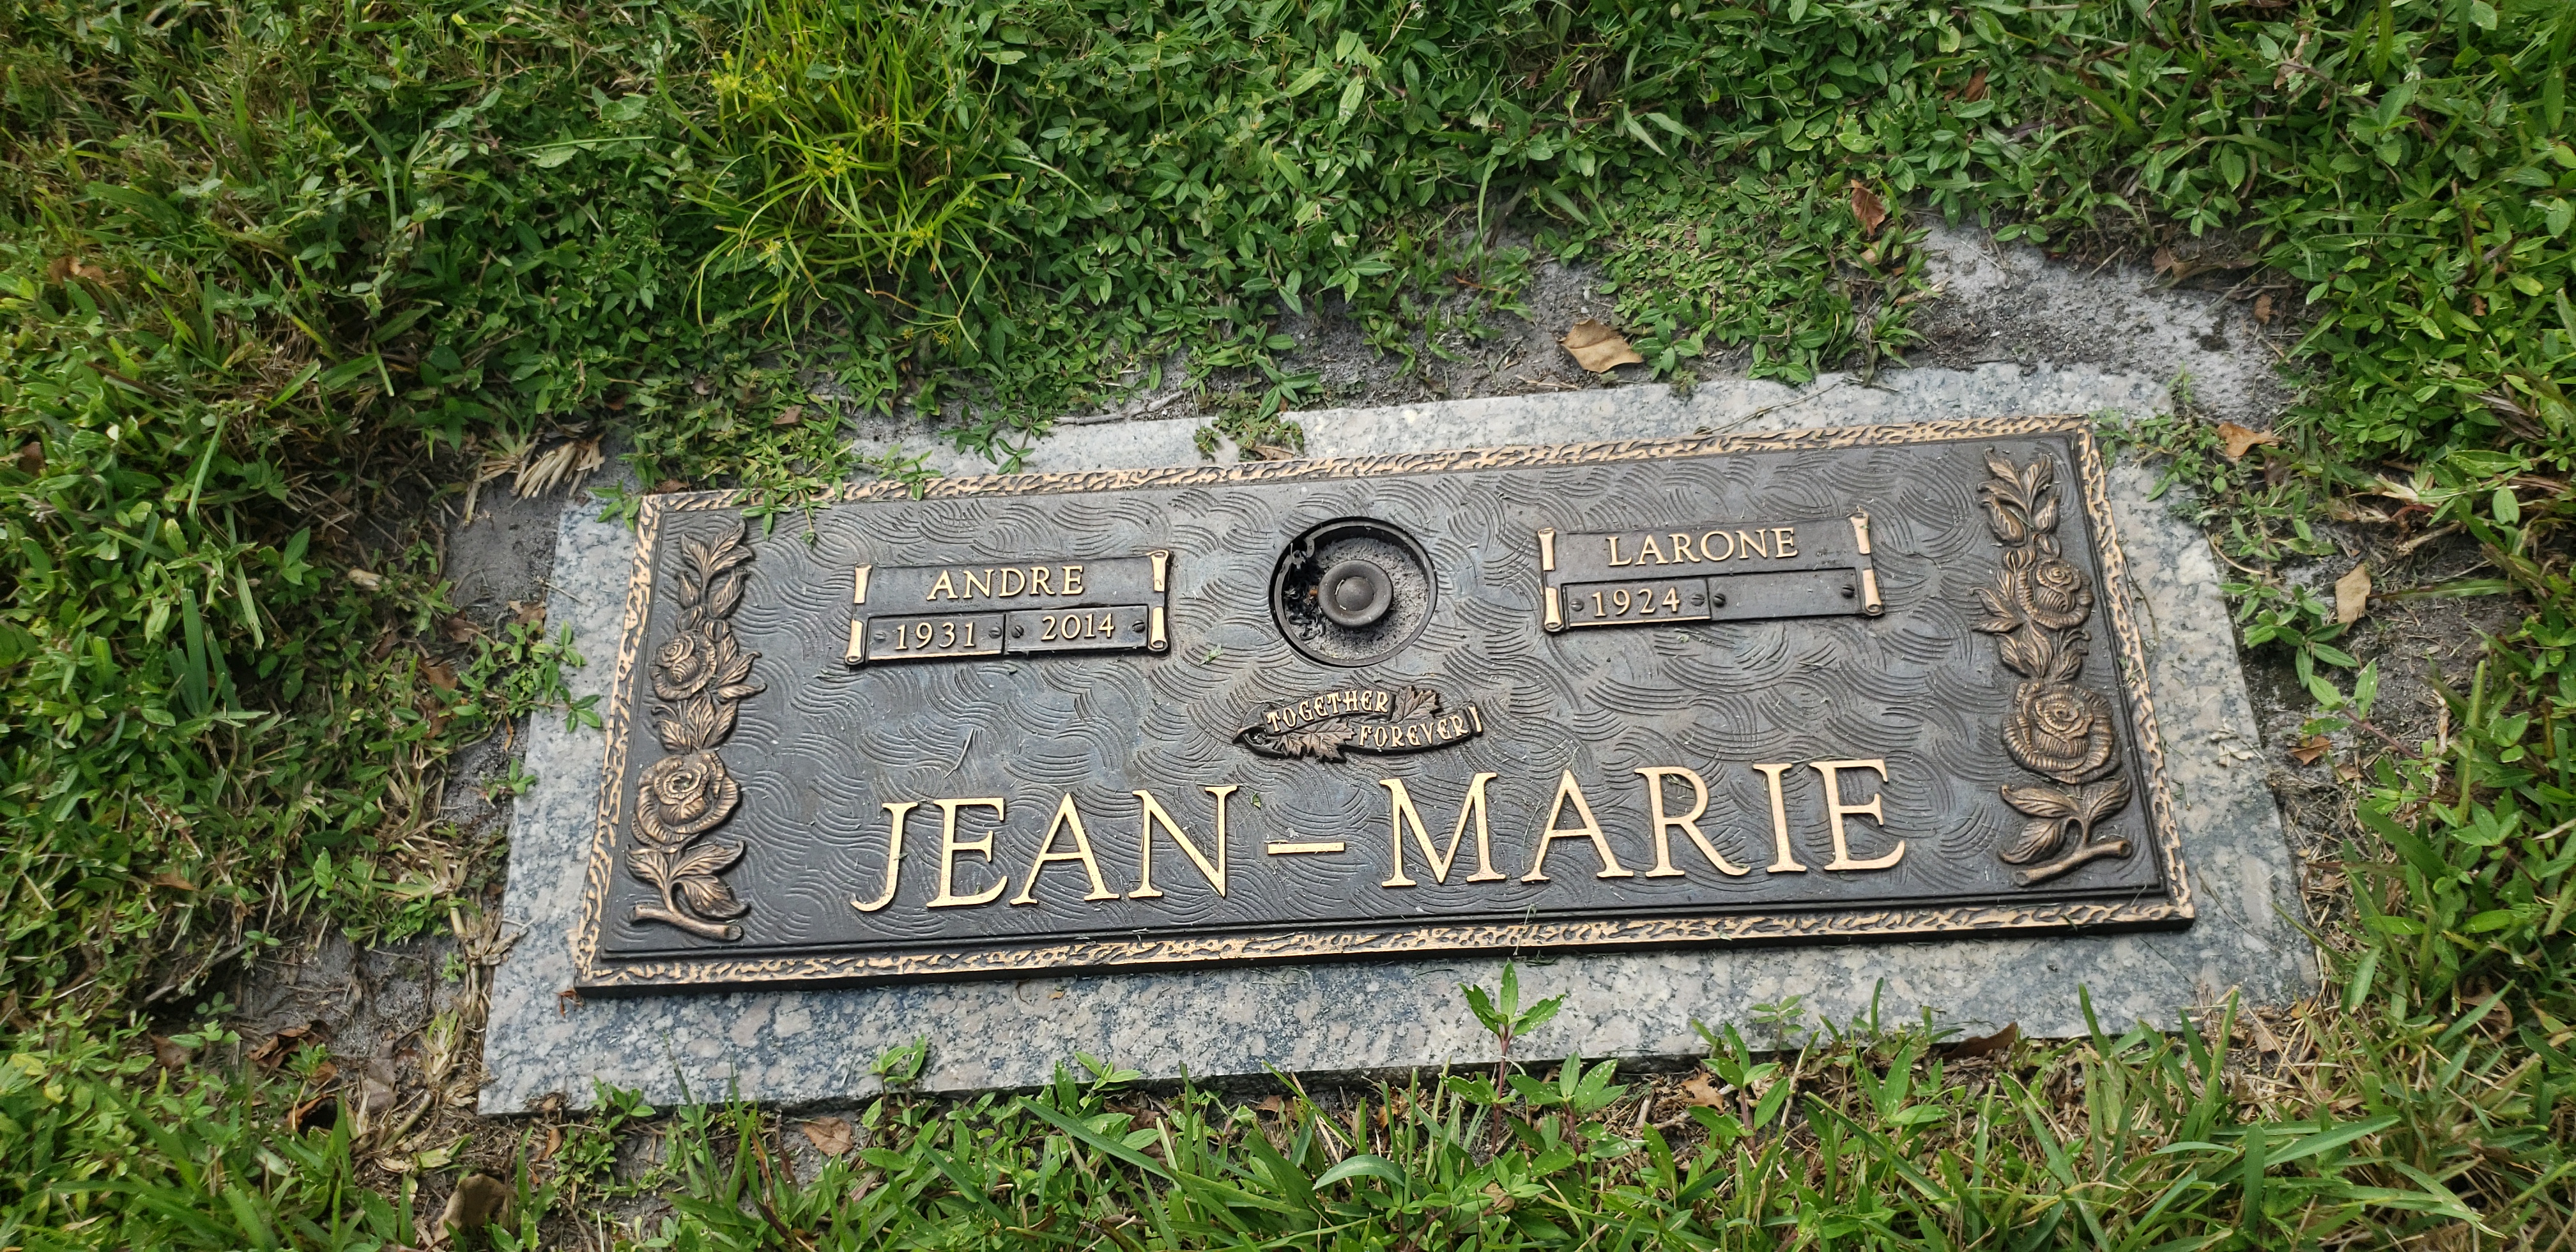 Larone Jean-Marie